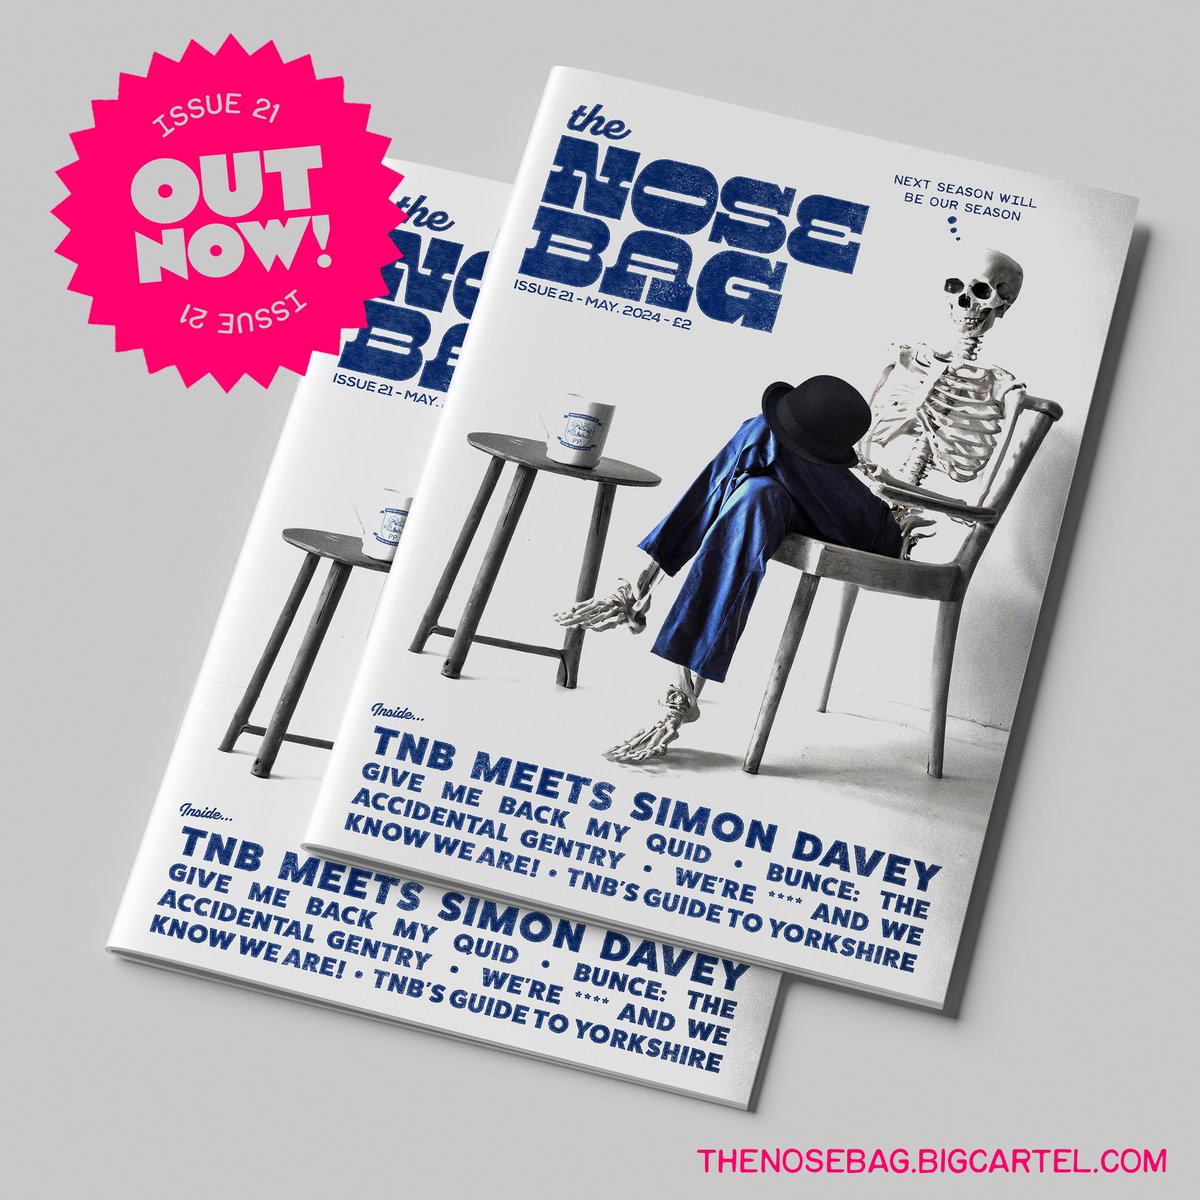 The artwork for Issue 21 of The Nosebag fanzine 😅😭
thenosebag.bigcartel.com
#pnefc #nineohnine